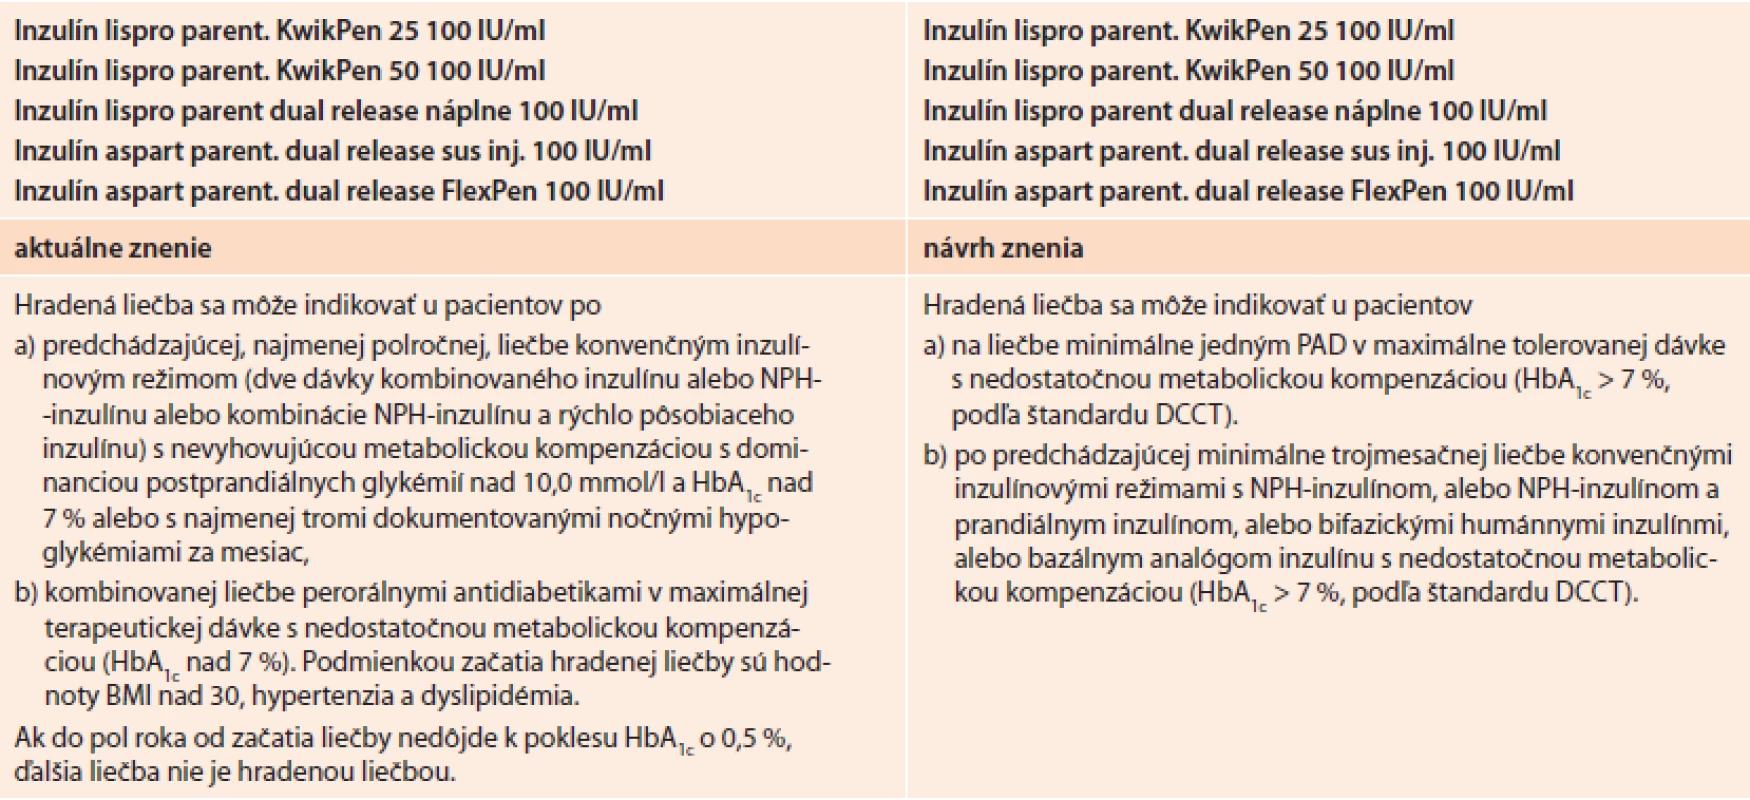 Pôvodné a aktuálne navrhované znenie indikačných obmedzení pre bifázické analógy inzulínu, ktoré sú v súčasnej dobe predmetom jednania